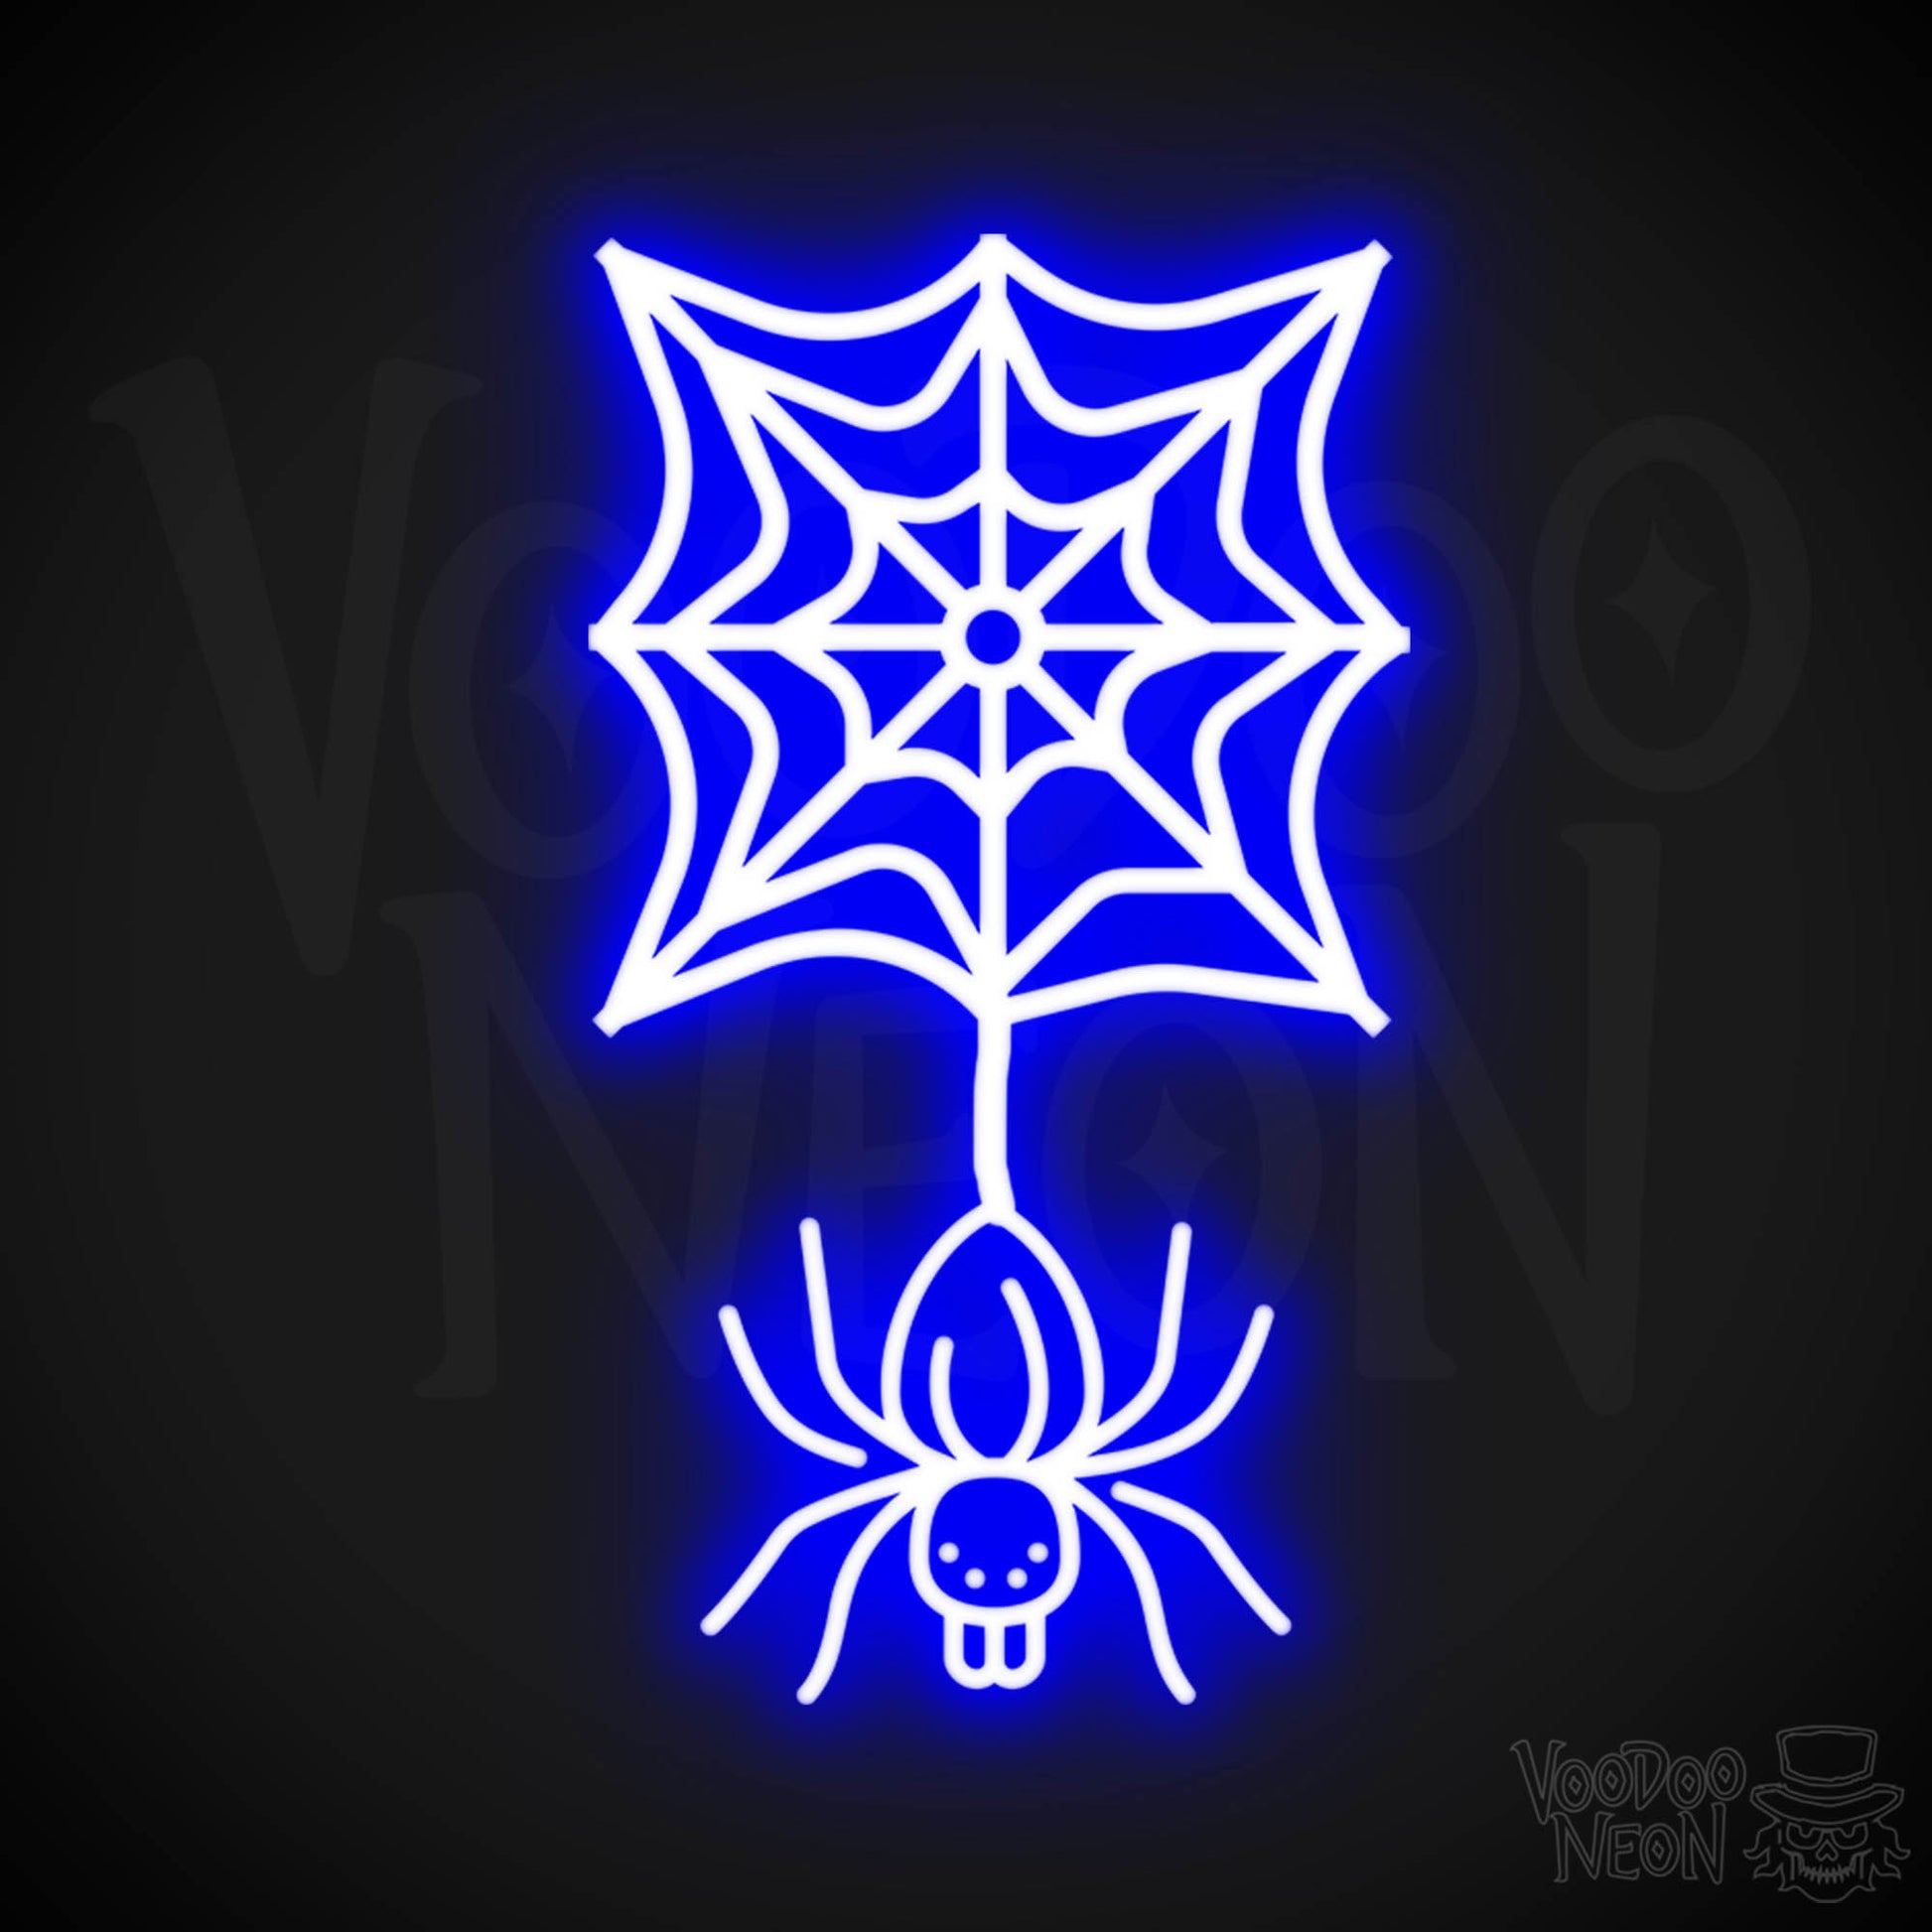 Neon Spider - Spider Neon Sign - Halloween LED Neon Spider - Color Dark Blue